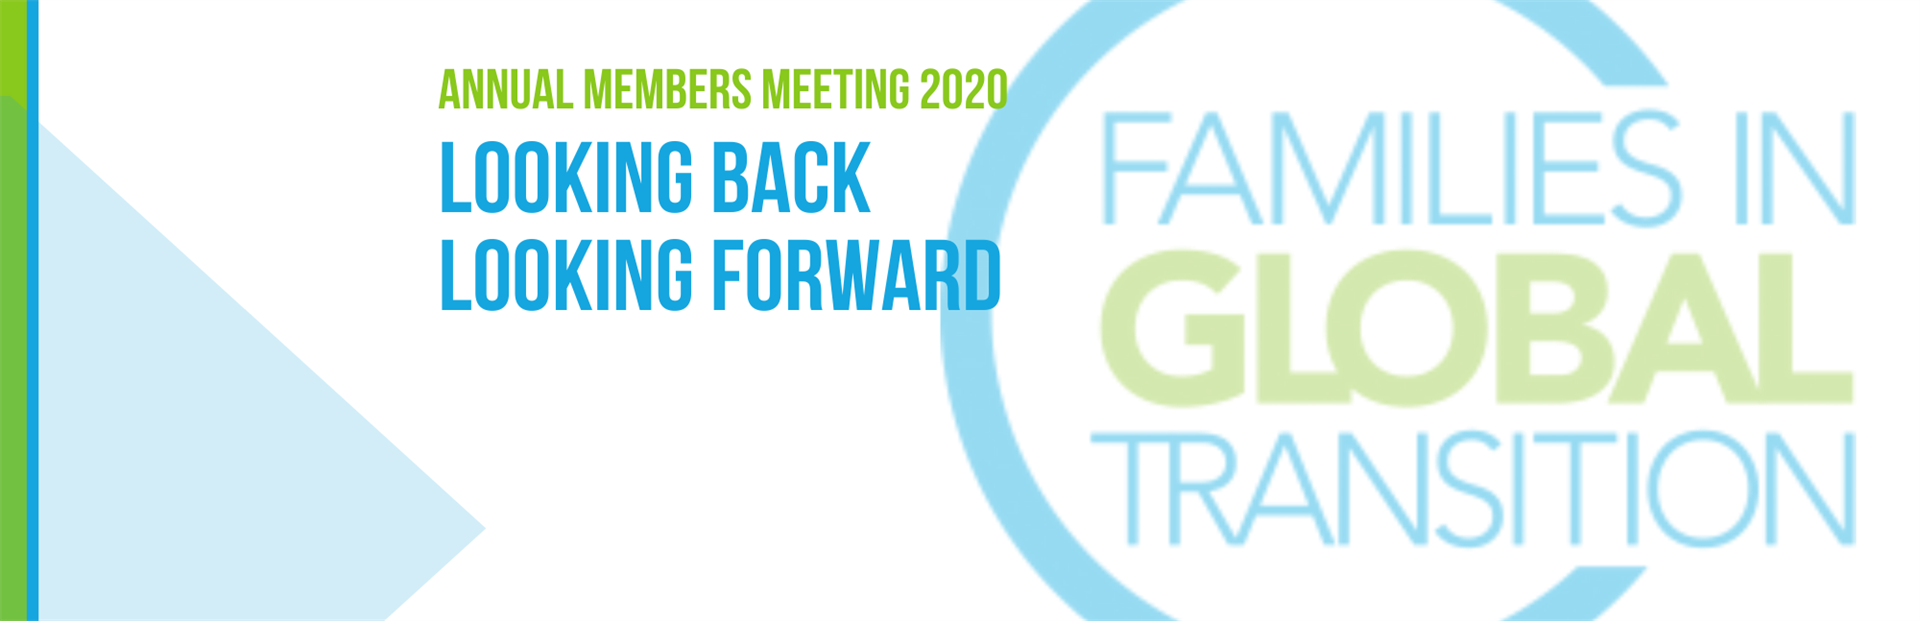 Blog title: Annual members meeting 2020, Looking back, Looking forward